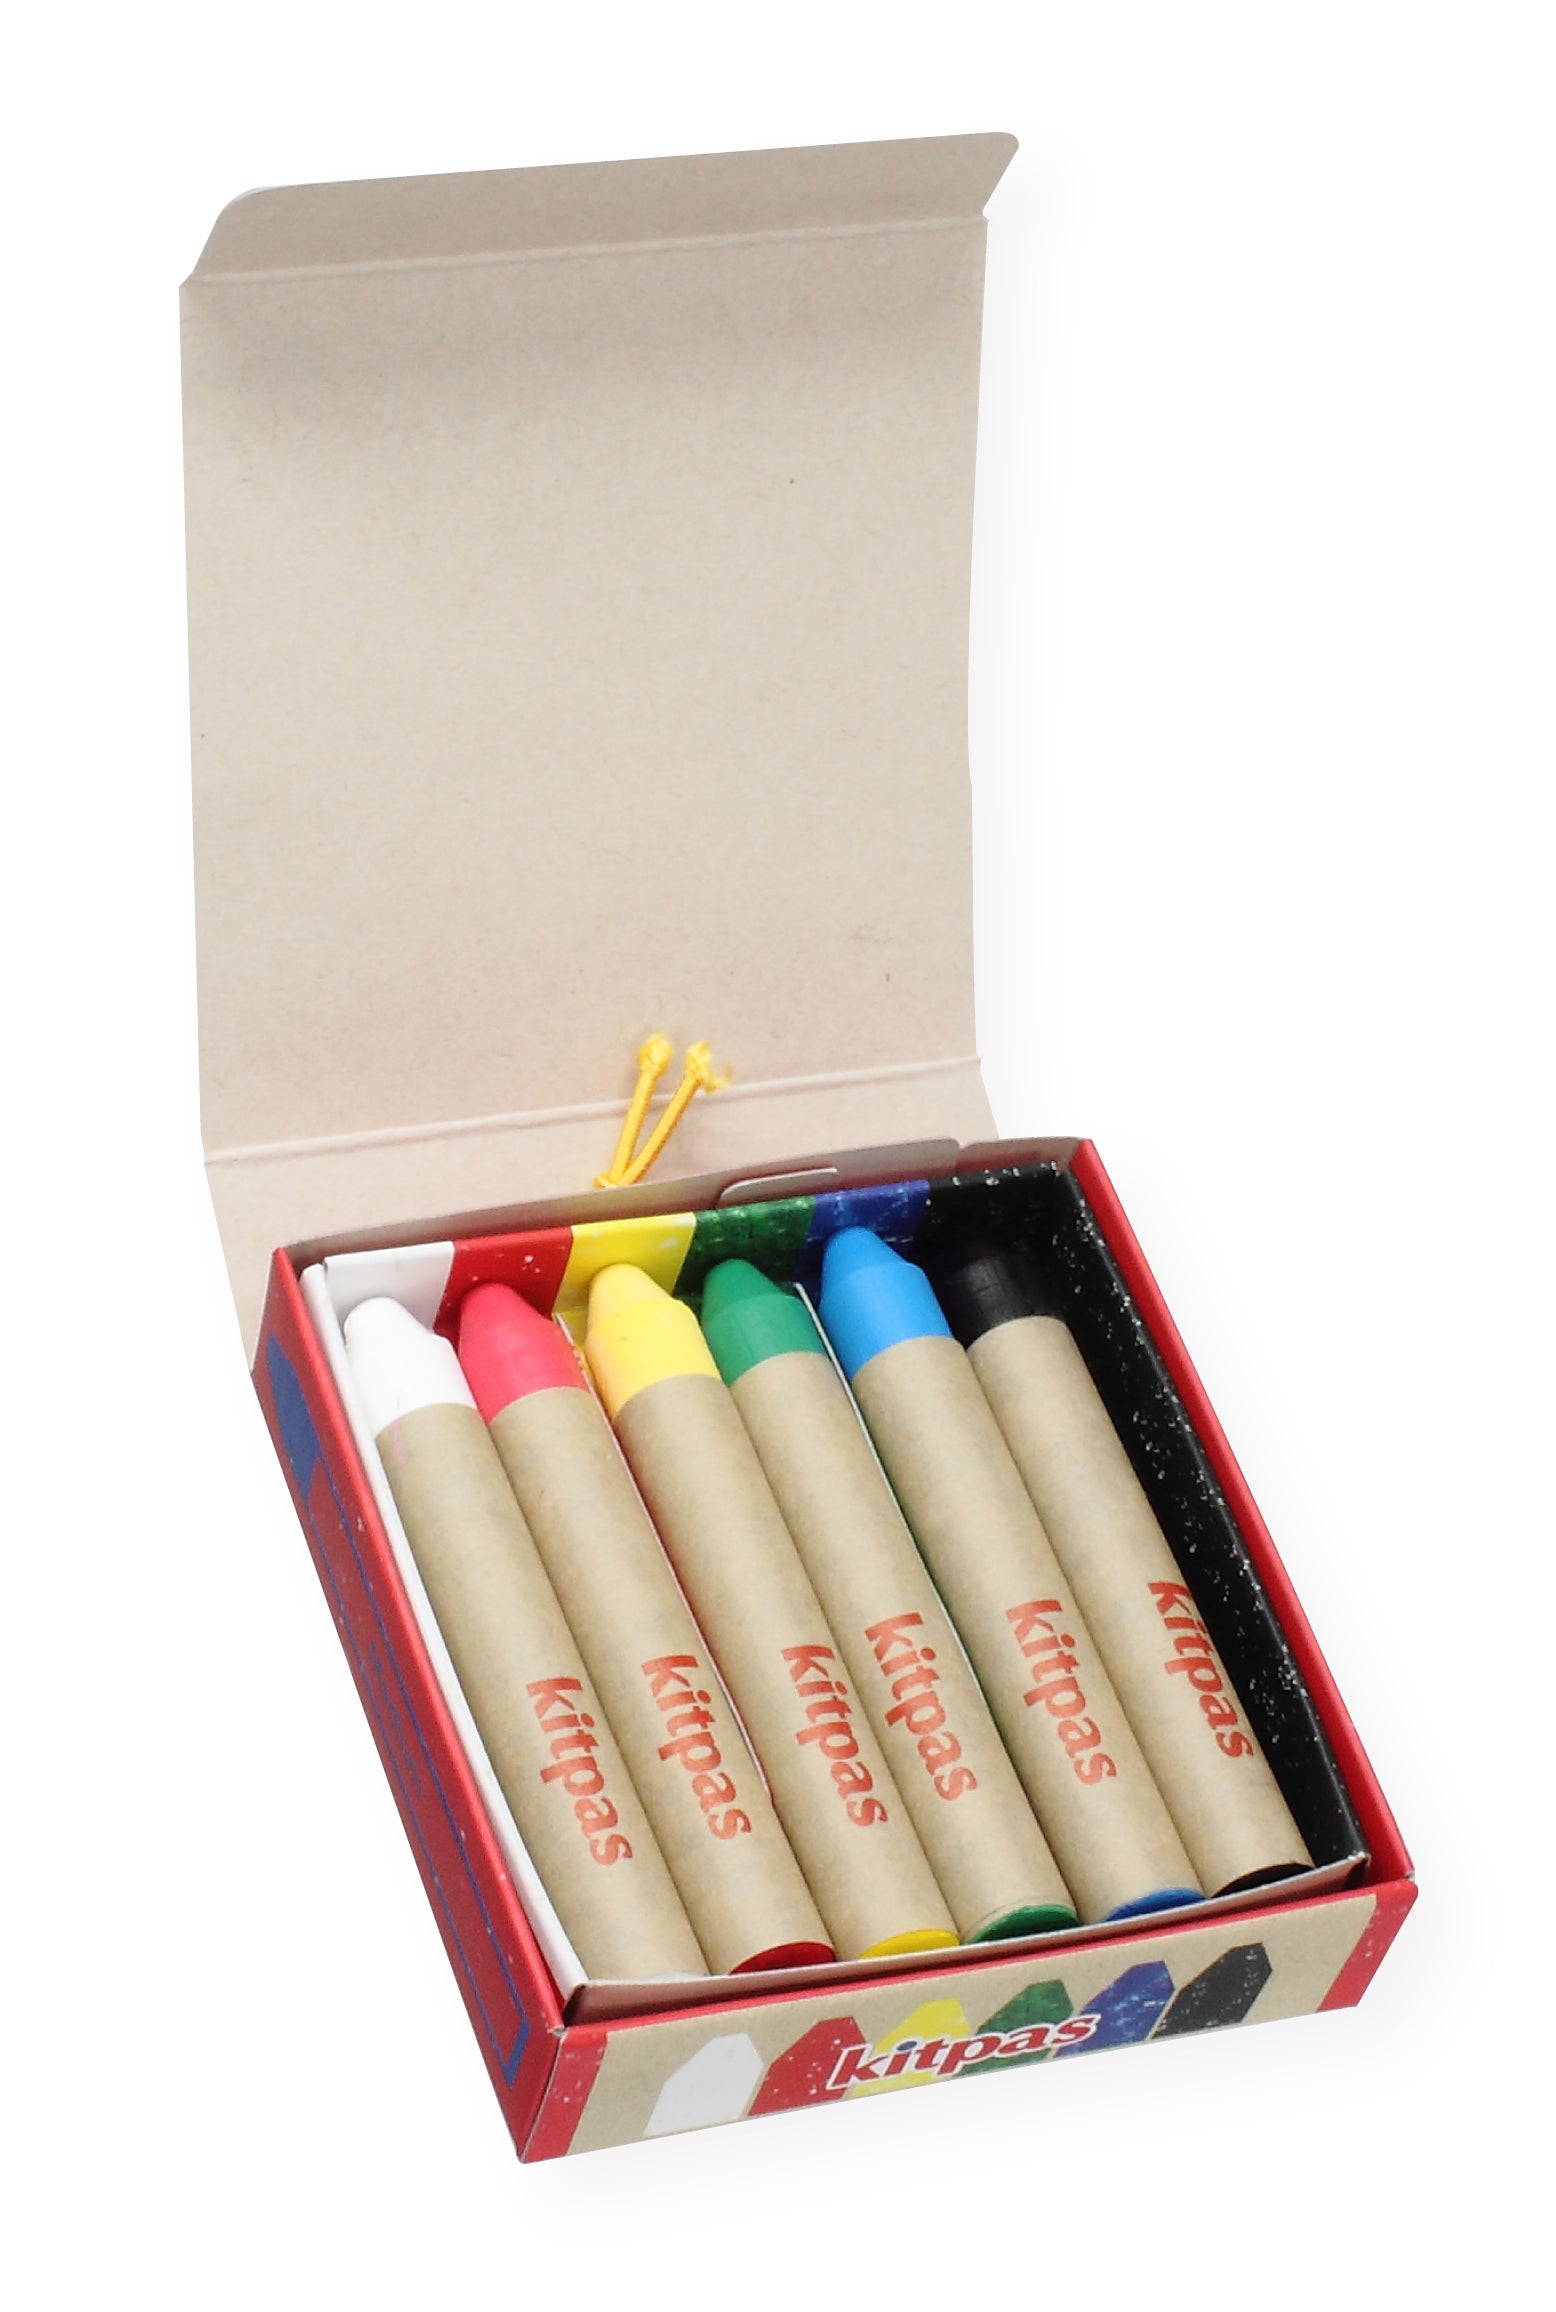 Kitpas Rice Bran Wax Art Crayons 6 Colors